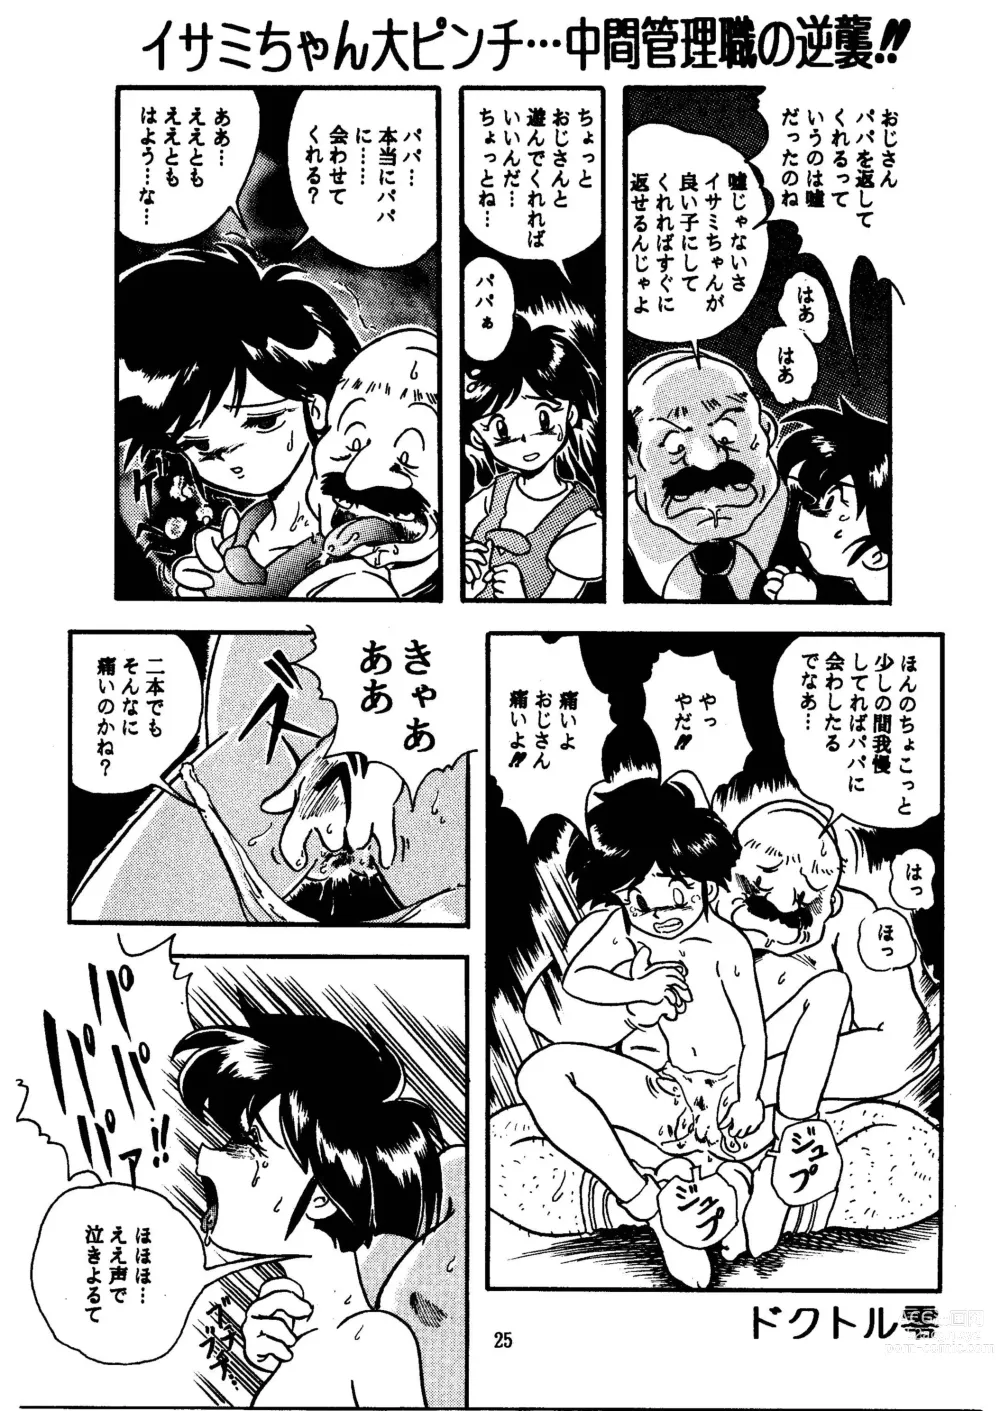 Page 25 of doujinshi GALTECH